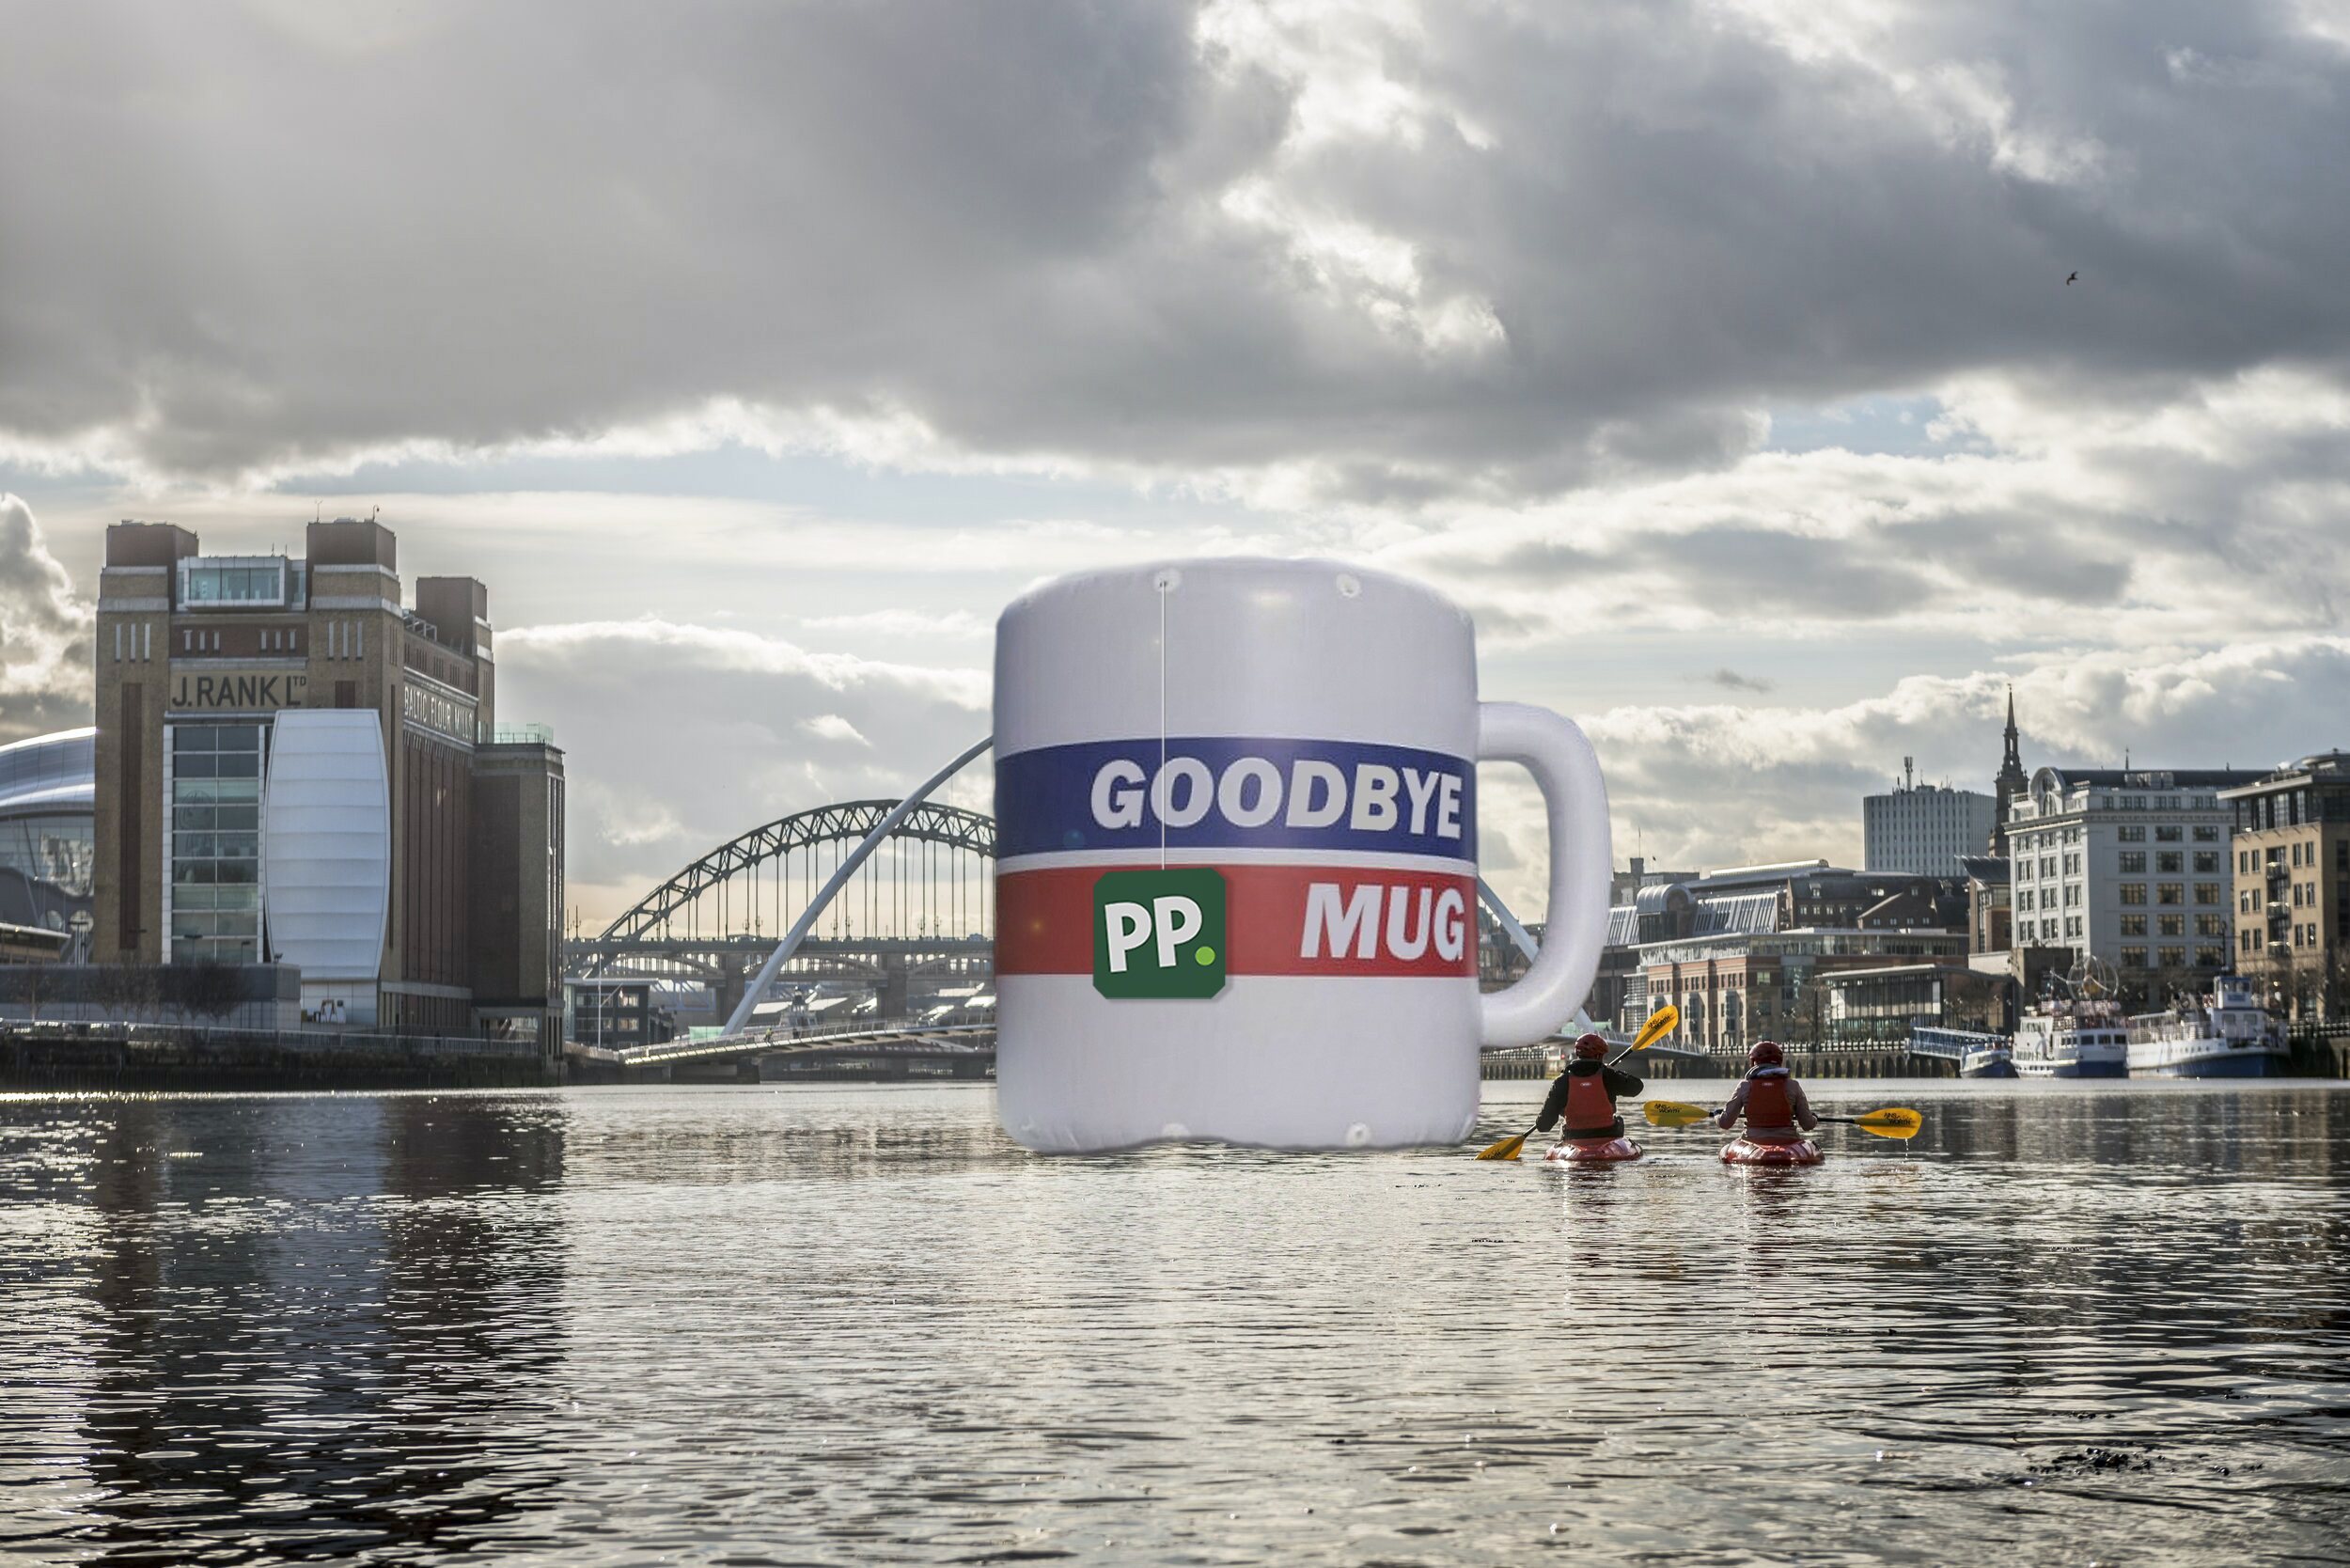 PP – Mug on the Tyne